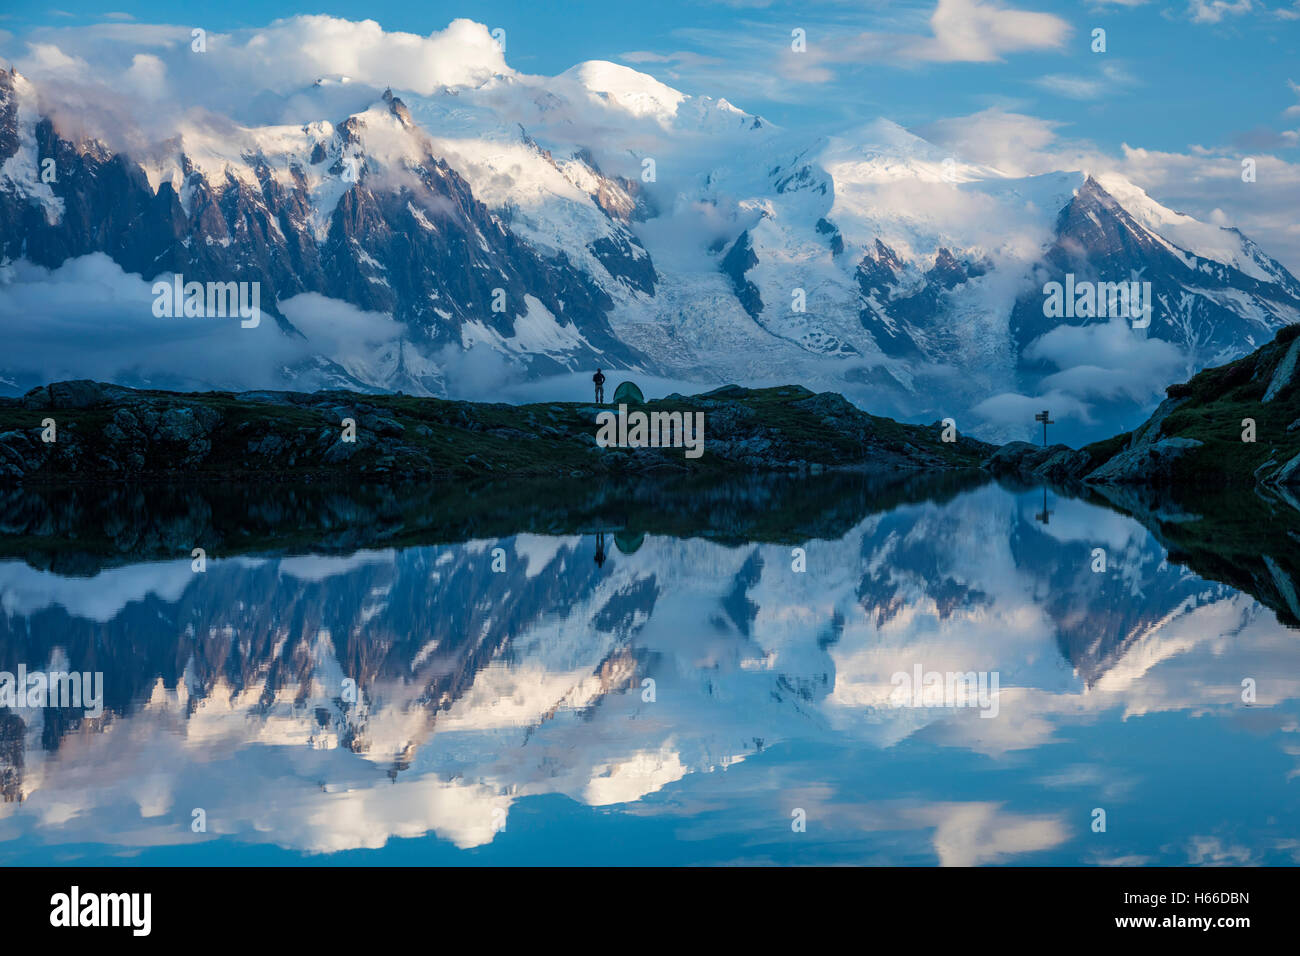 Gli escursionisti e il massiccio del Monte Bianco riflette in Lac des Cheserys. Valle di Chamonix, sulle Alpi francesi, Francia. Foto Stock